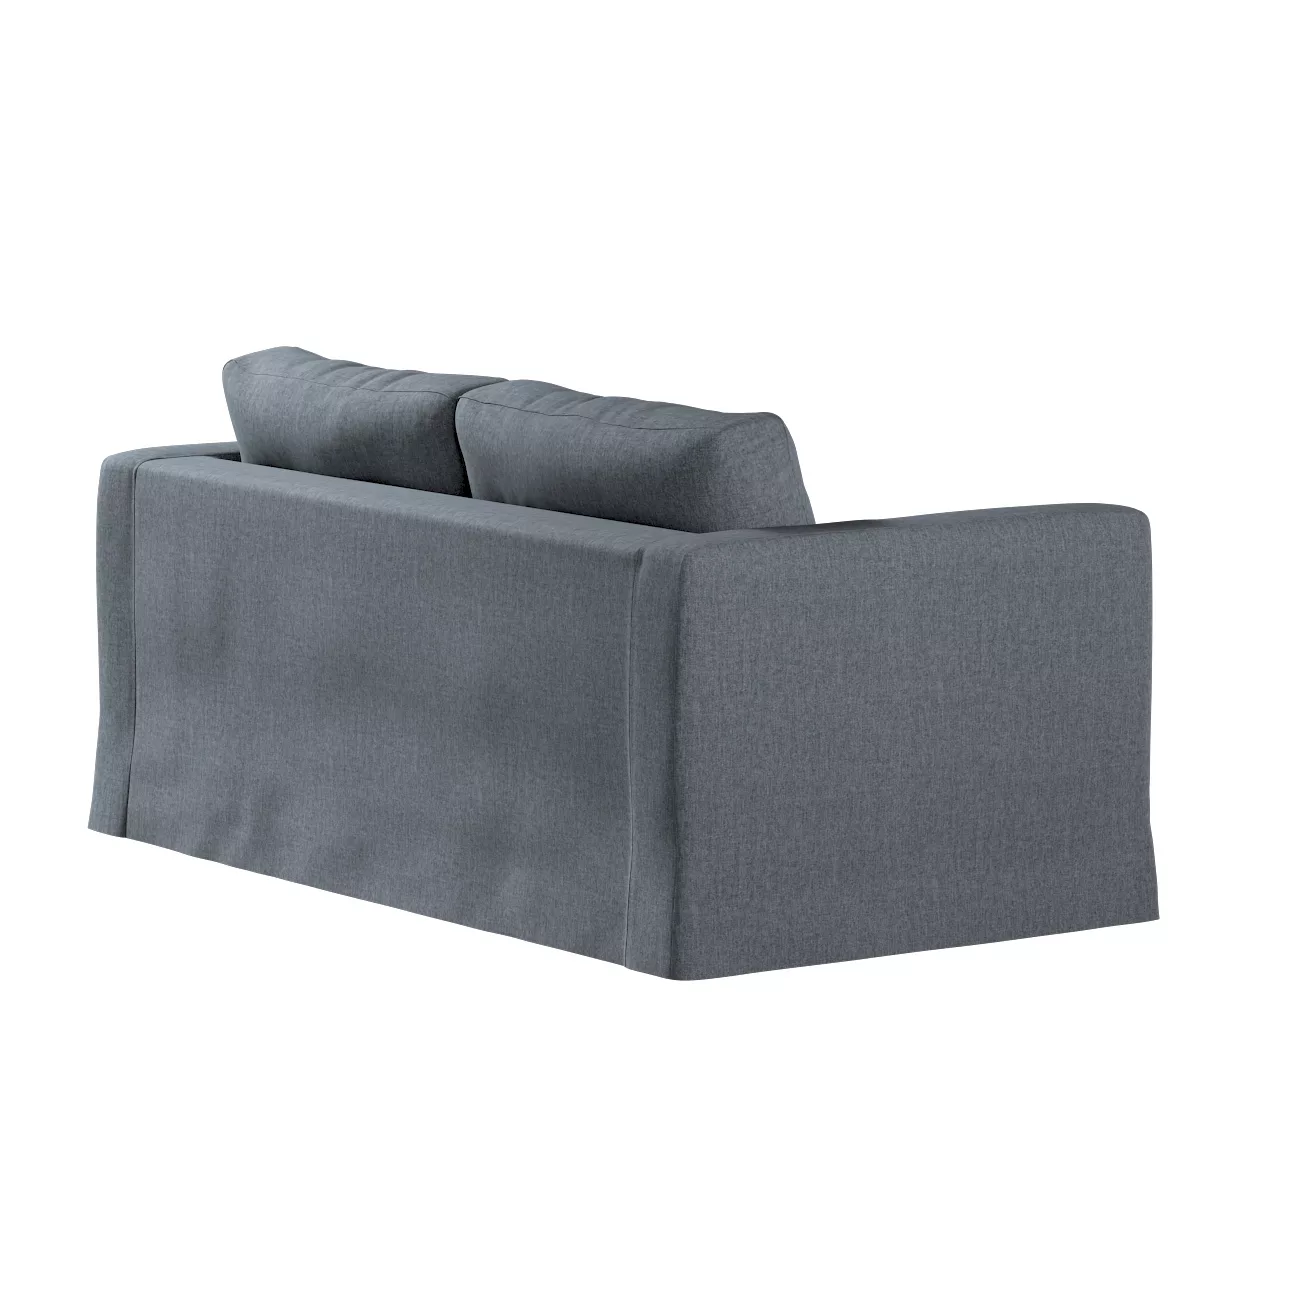 Bezug für Karlstad 2-Sitzer Sofa nicht ausklappbar, lang, grau, Sofahusse, günstig online kaufen